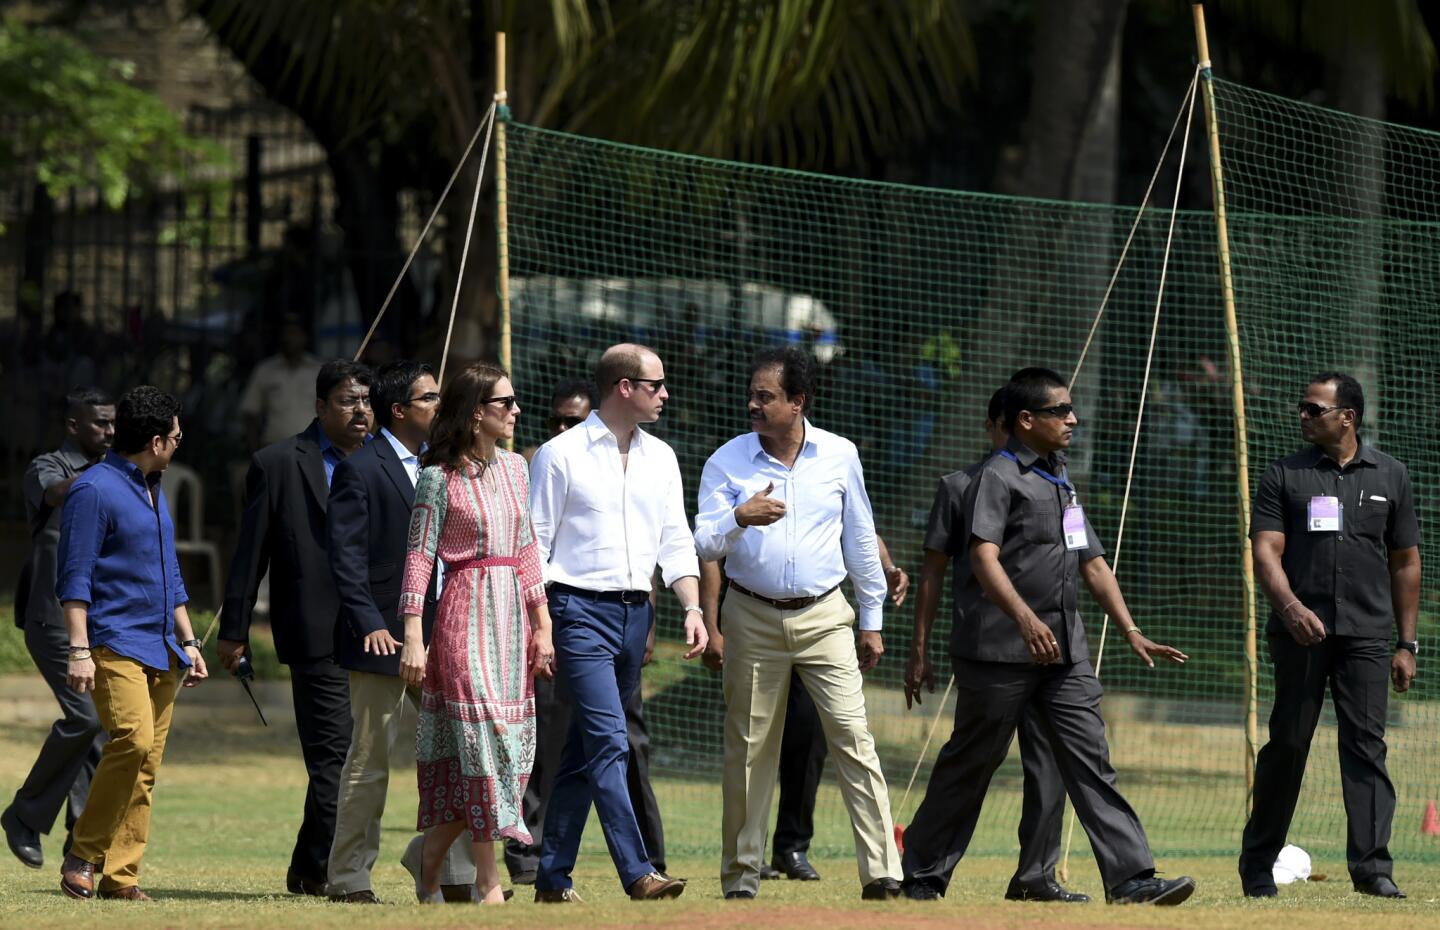 India royal visit